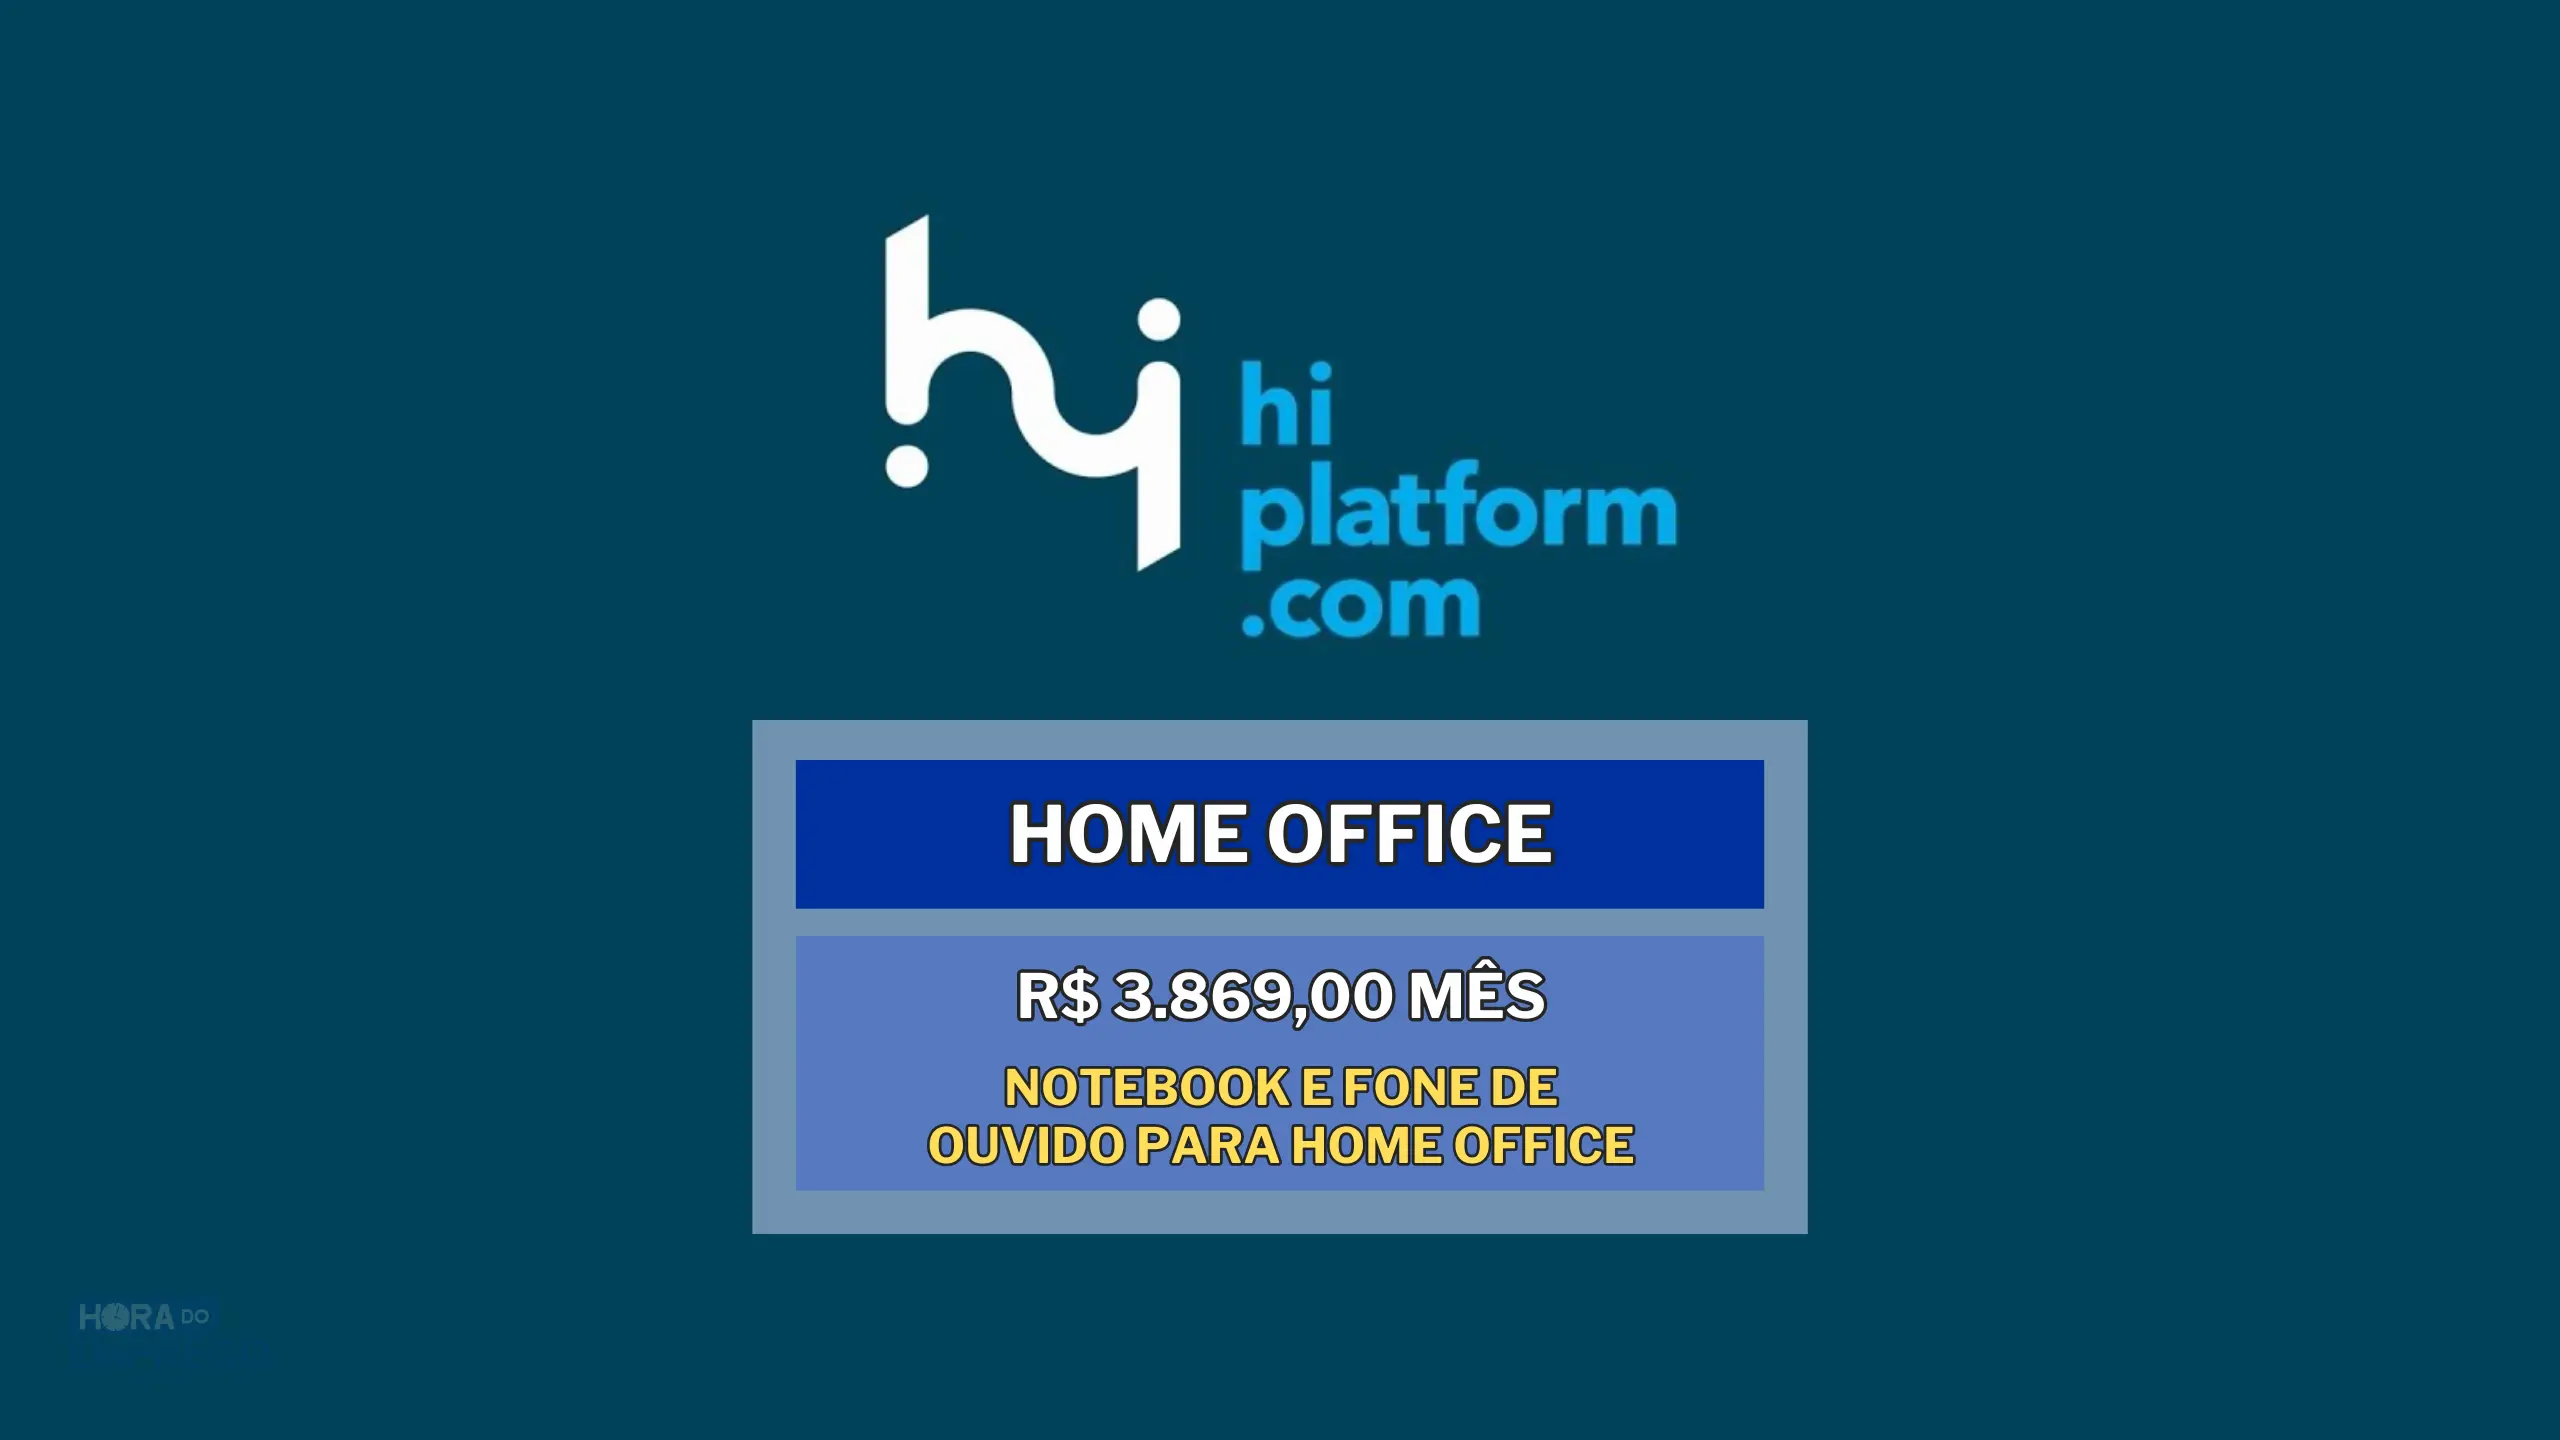 Empresa oferece Notebook e fone de ouvido para você trabalhar de Casa! Hi Platform contrata para HOME OFFICE Analista de Suporte Jr